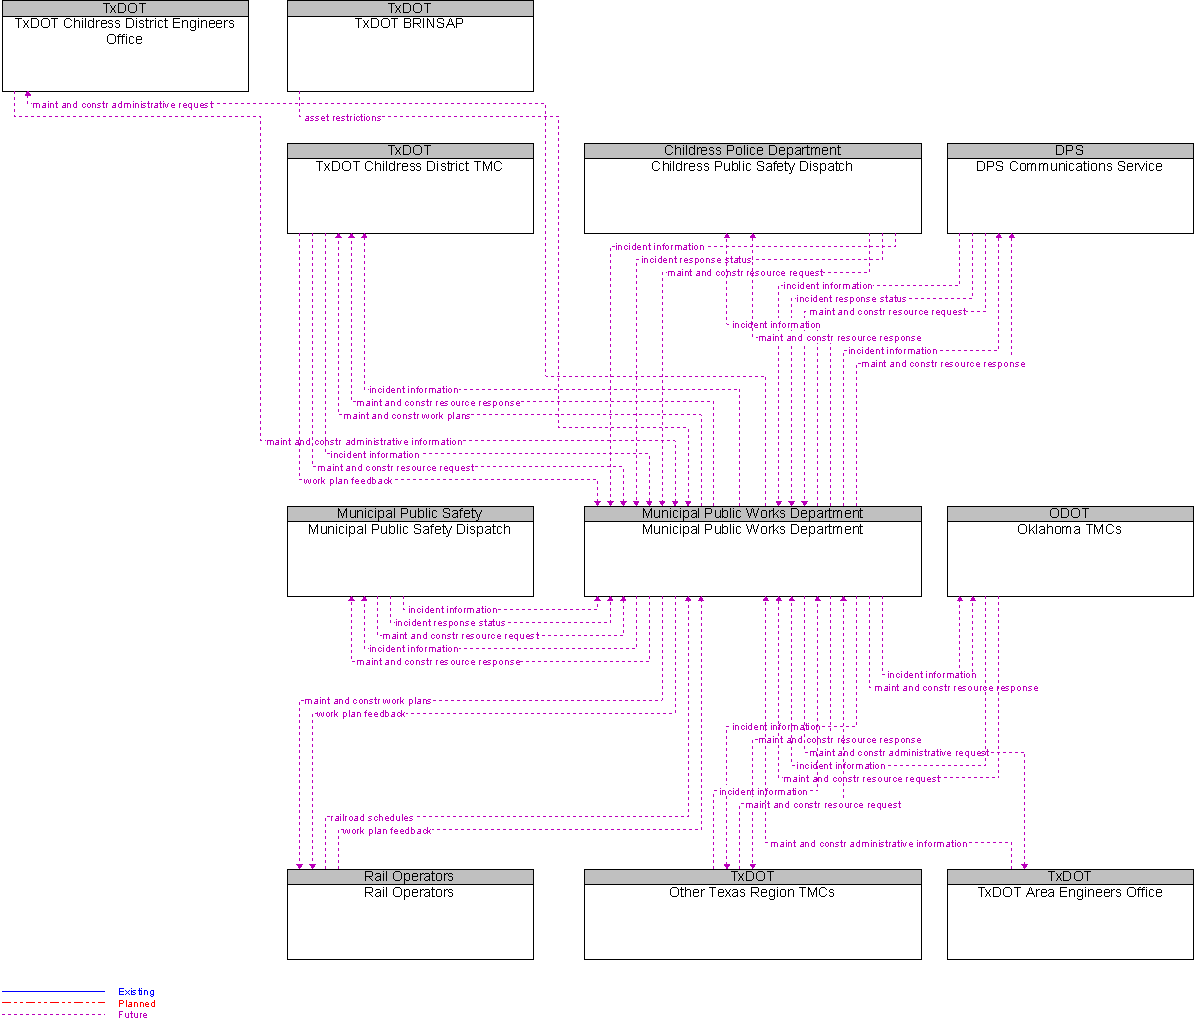 Context Diagram for Municipal Public Works Department